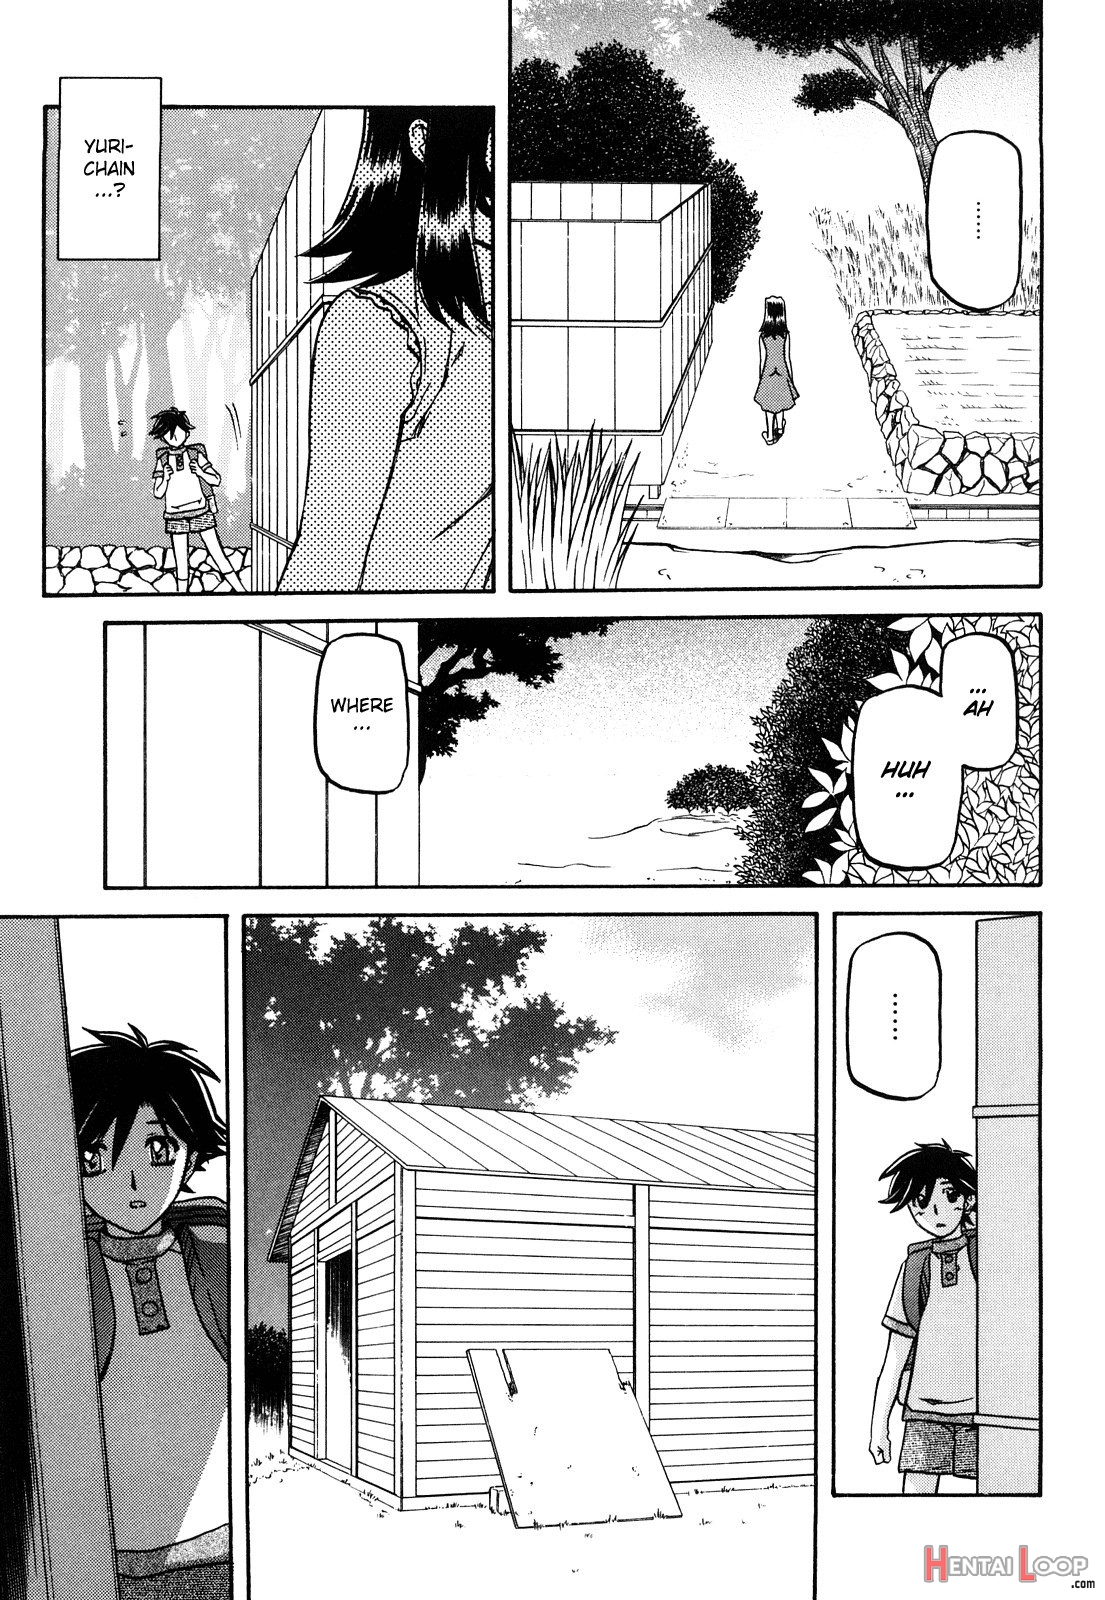 Sayuki No Sato page 220